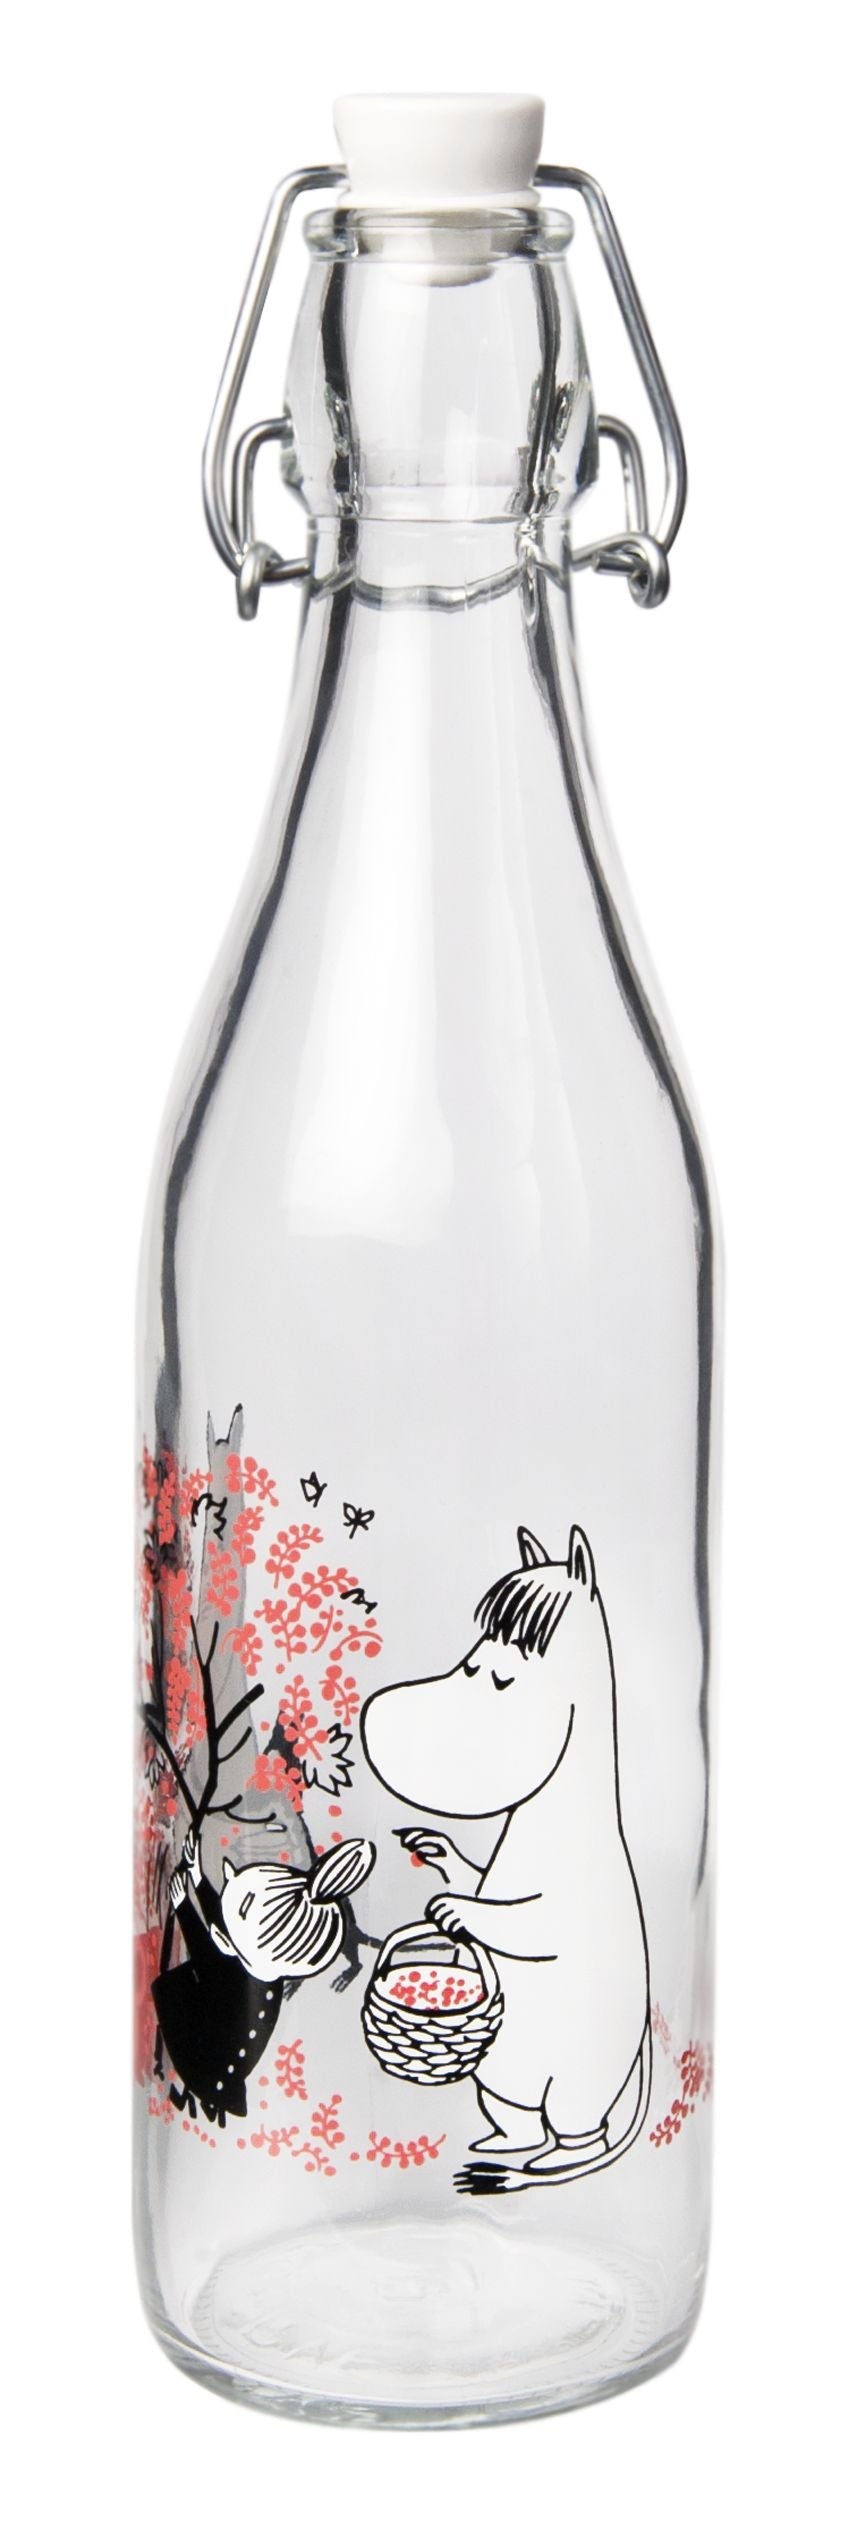 Muurla Moomin glassflaske, bær